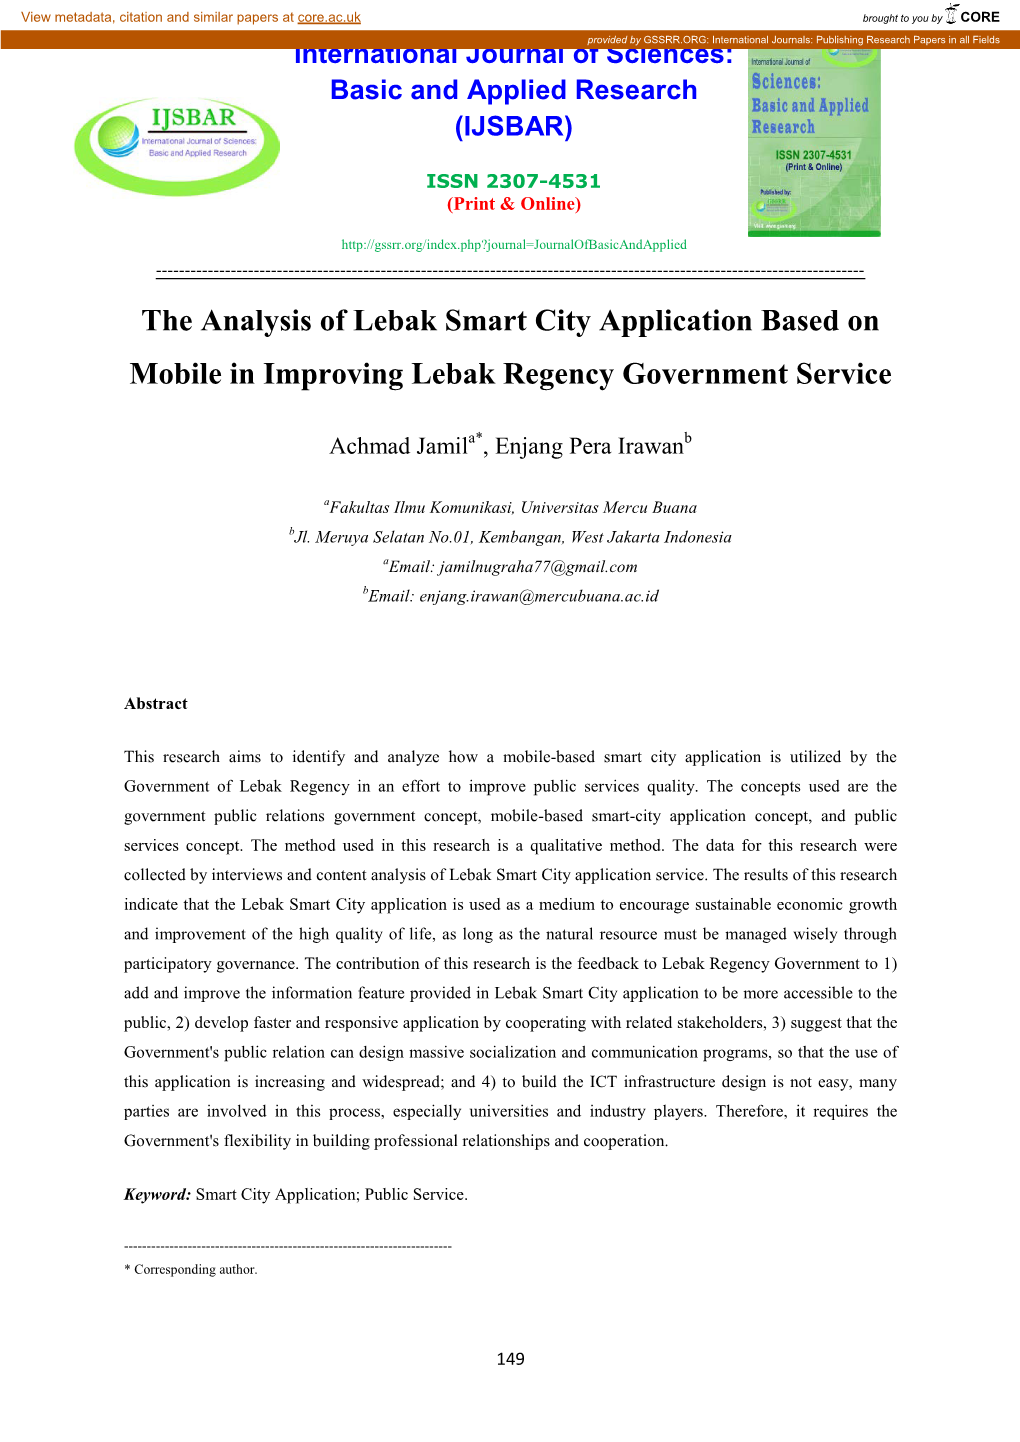 The Analysis of Lebak Smart City Application Based on Mobile in Improving Lebak Regency Government Service